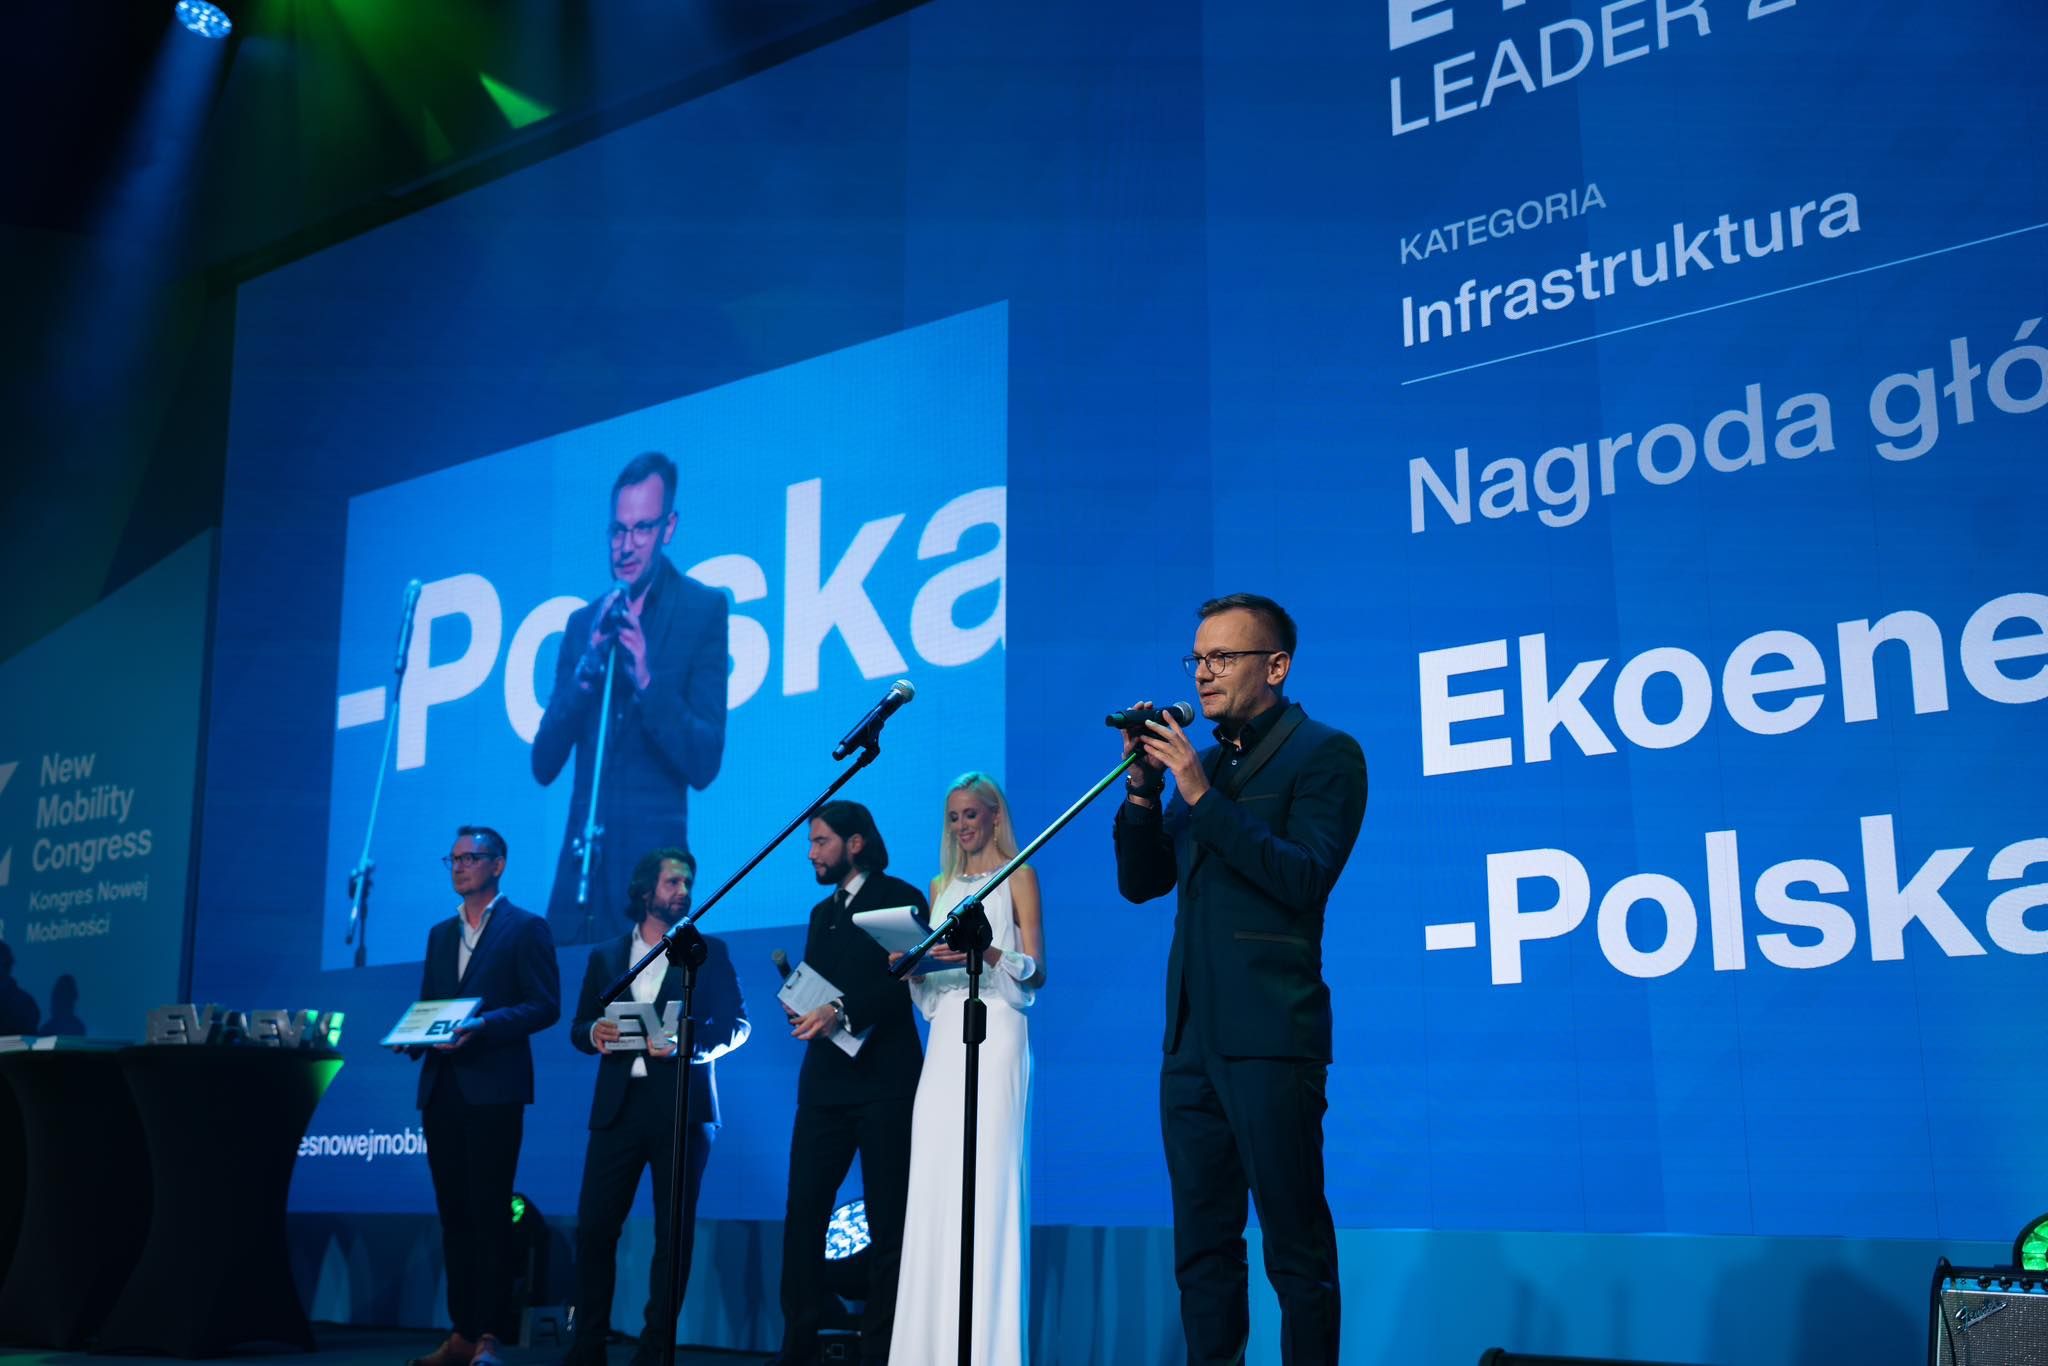 Ekoenergetyka Awarded New Mobility Congress 2023, Ekoenergetyka